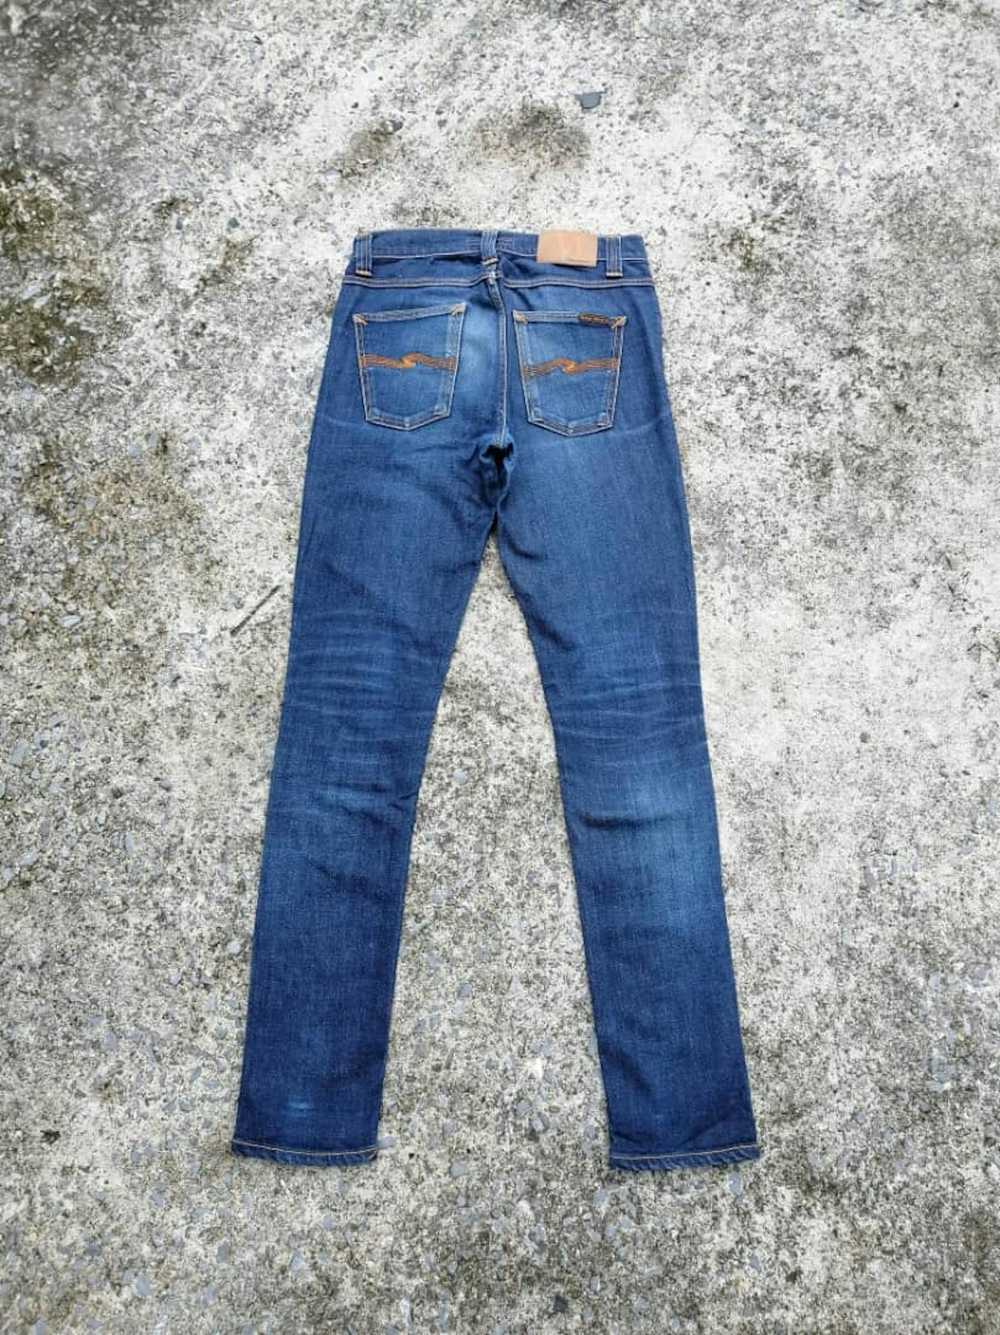 Nudie Jeans Nudie Jeans Lean Dean Dry 16 Dips Den… - image 1